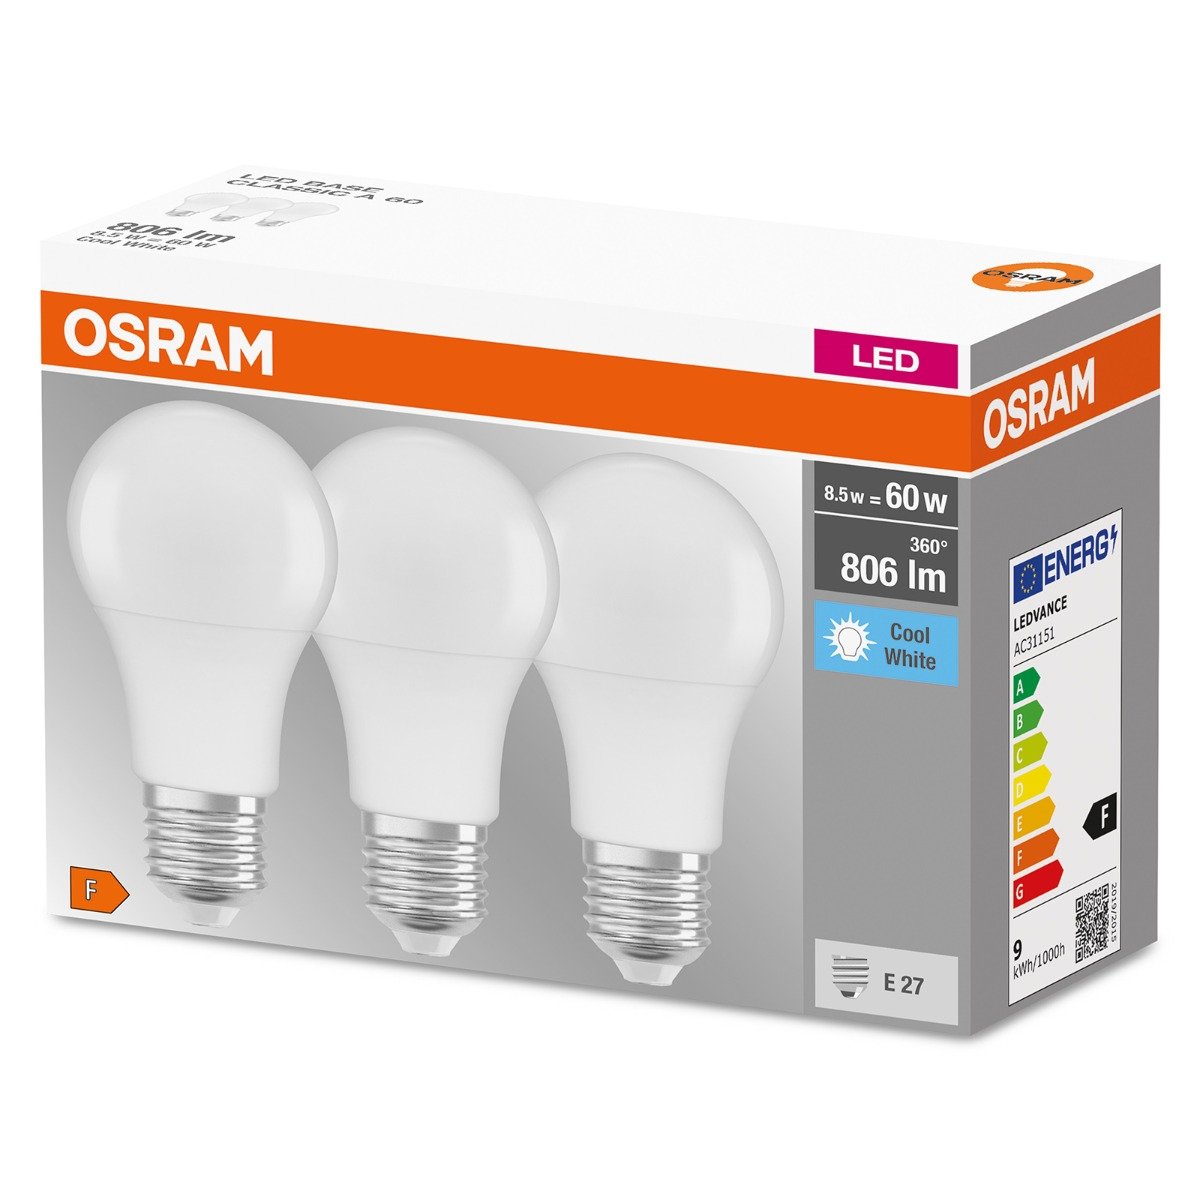 Osram lampa LED z cokołem: E27 zimna biel 4000 K 8,50 W zamiennik żarówki 60 W matowa LED baza Classic A 4058075127531